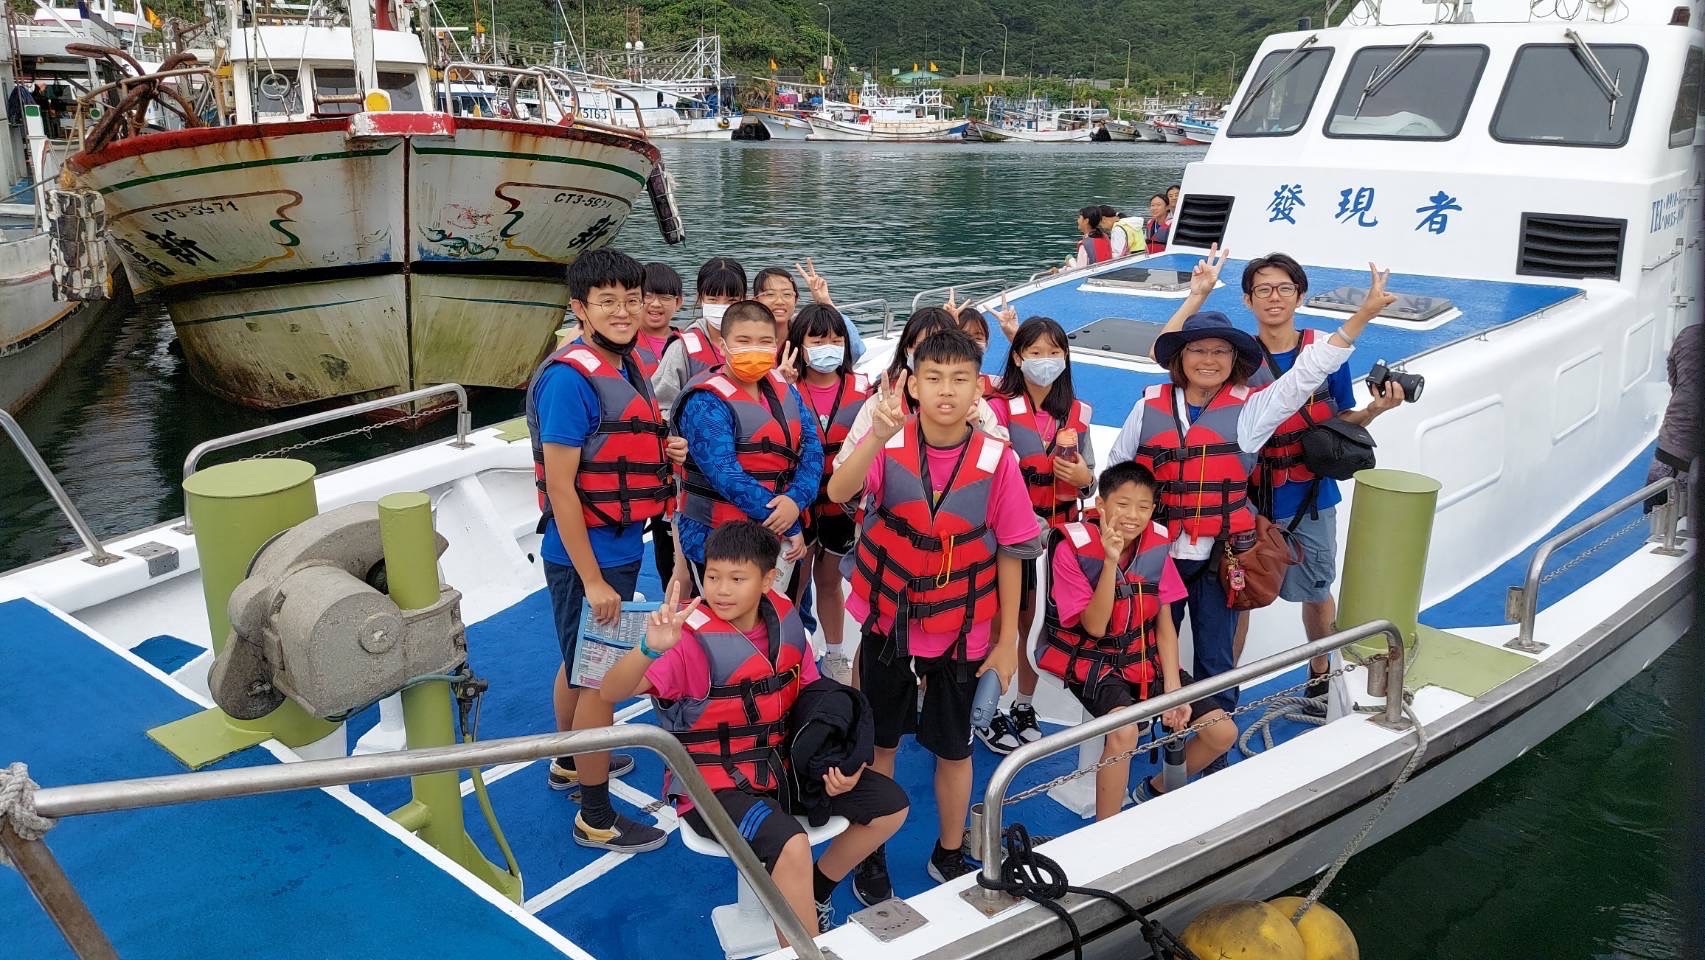 萬里教育志工協會辦認識家鄉活動 讓學童搭遊艇從海上看家鄉
